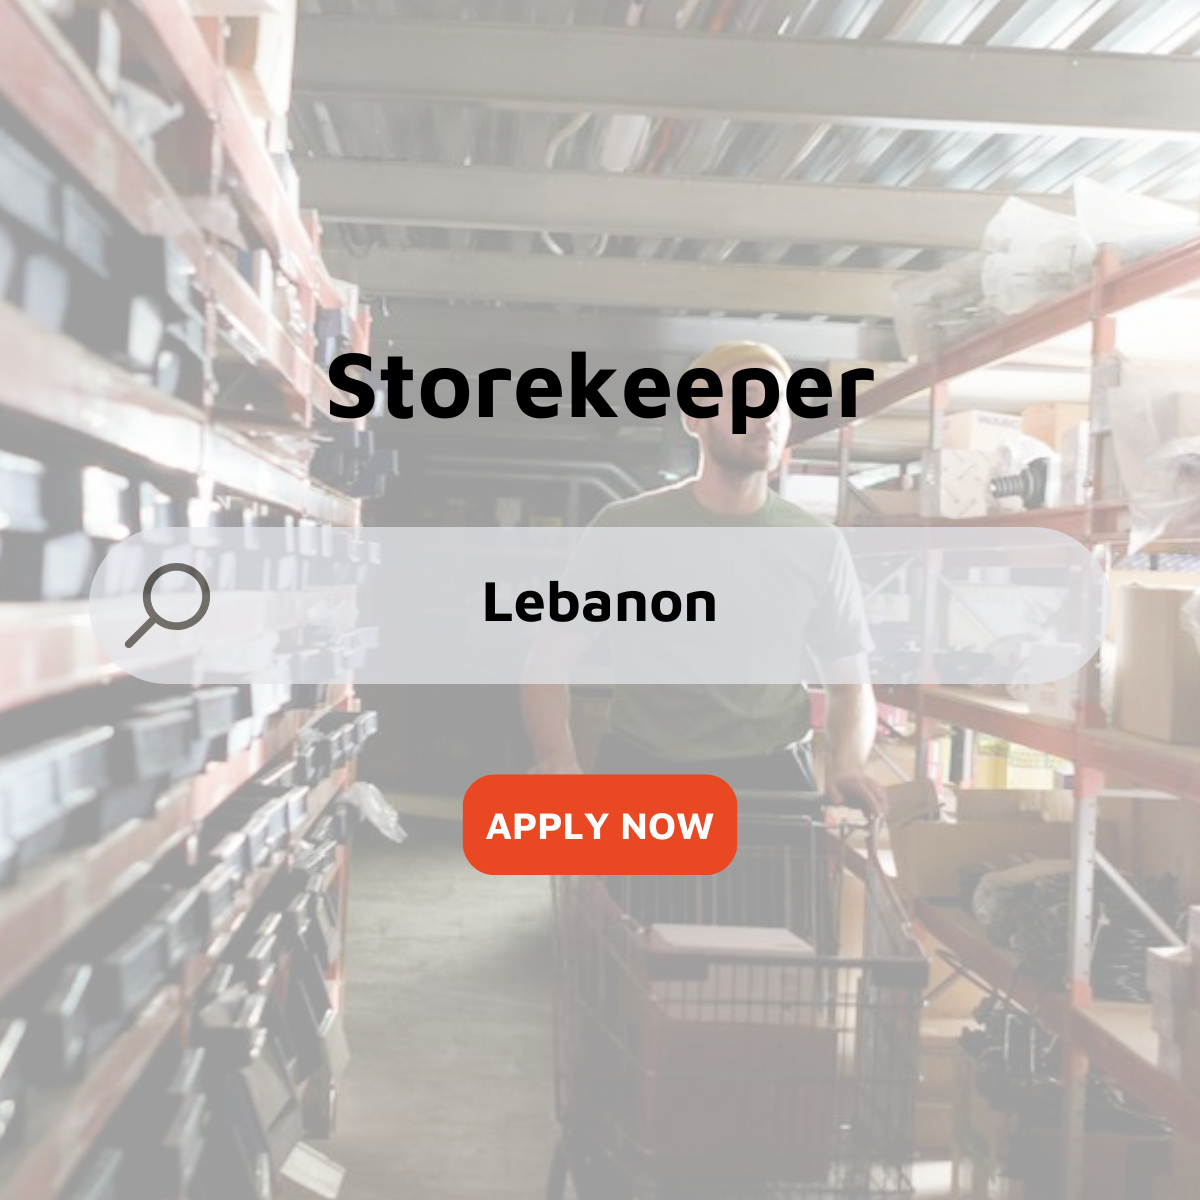 Storekeeper